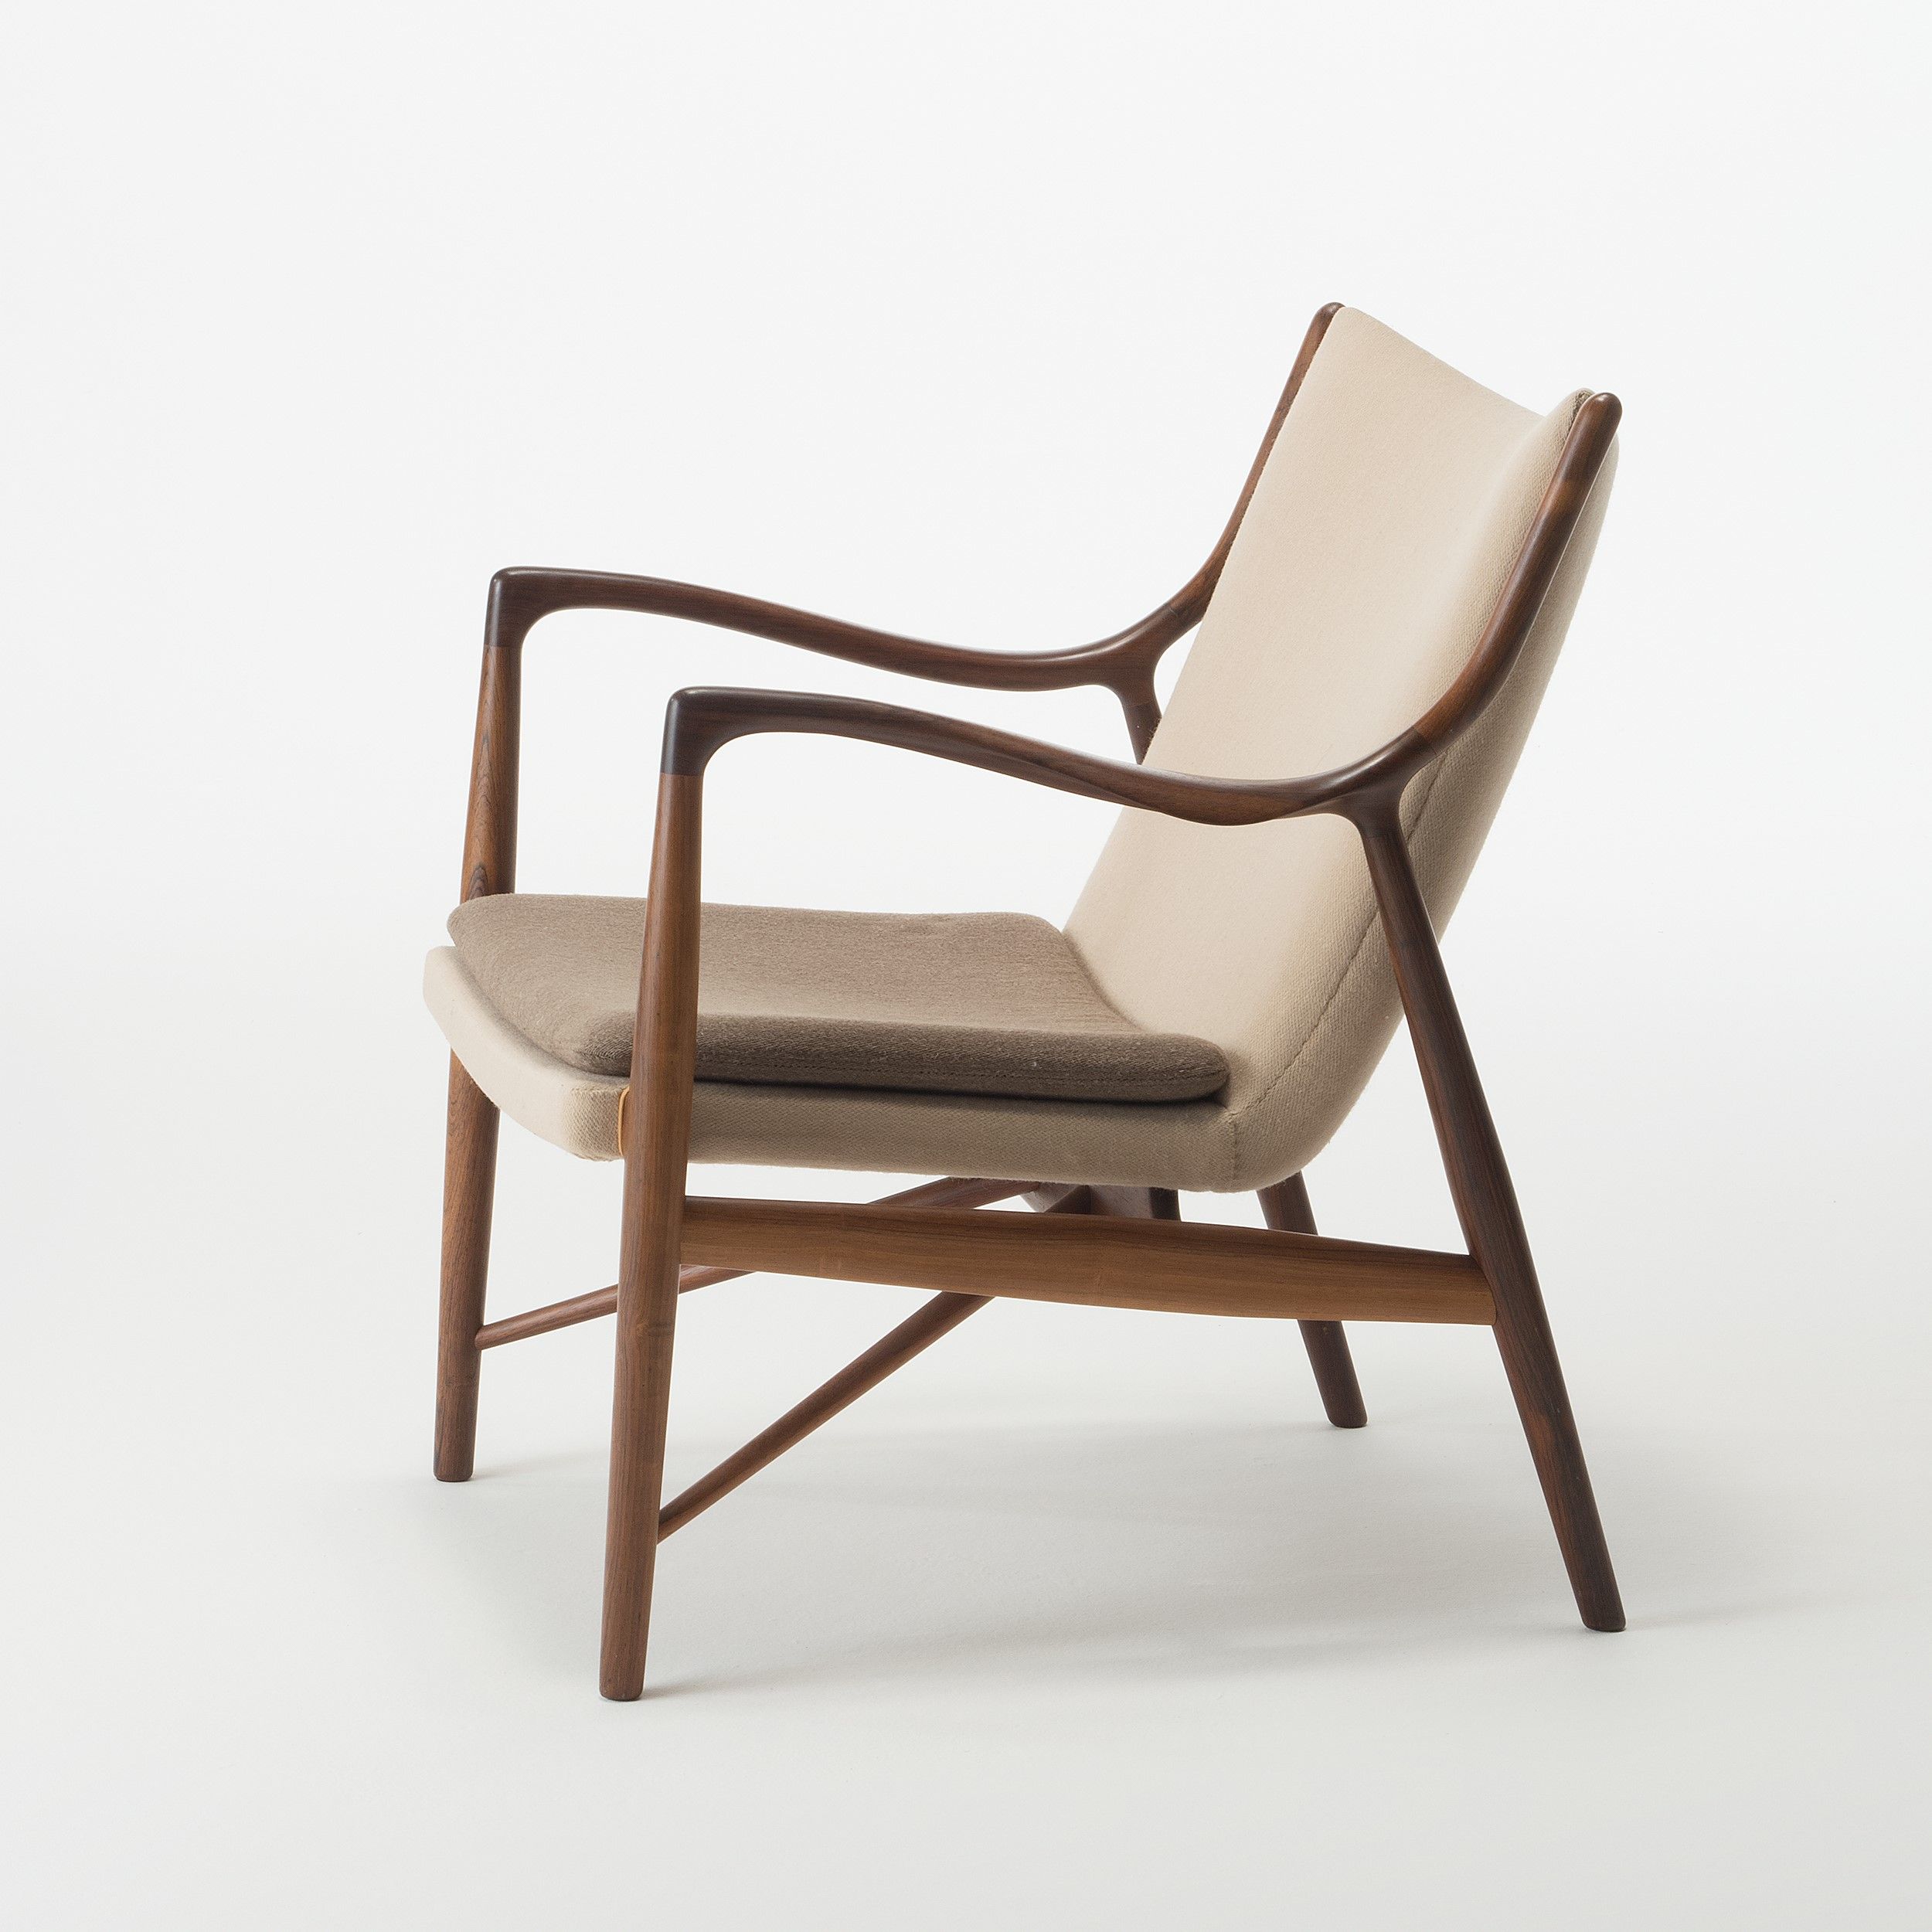 2022年夏「フィン・ユールとデンマークの椅子」展、東京都美術館で開催 